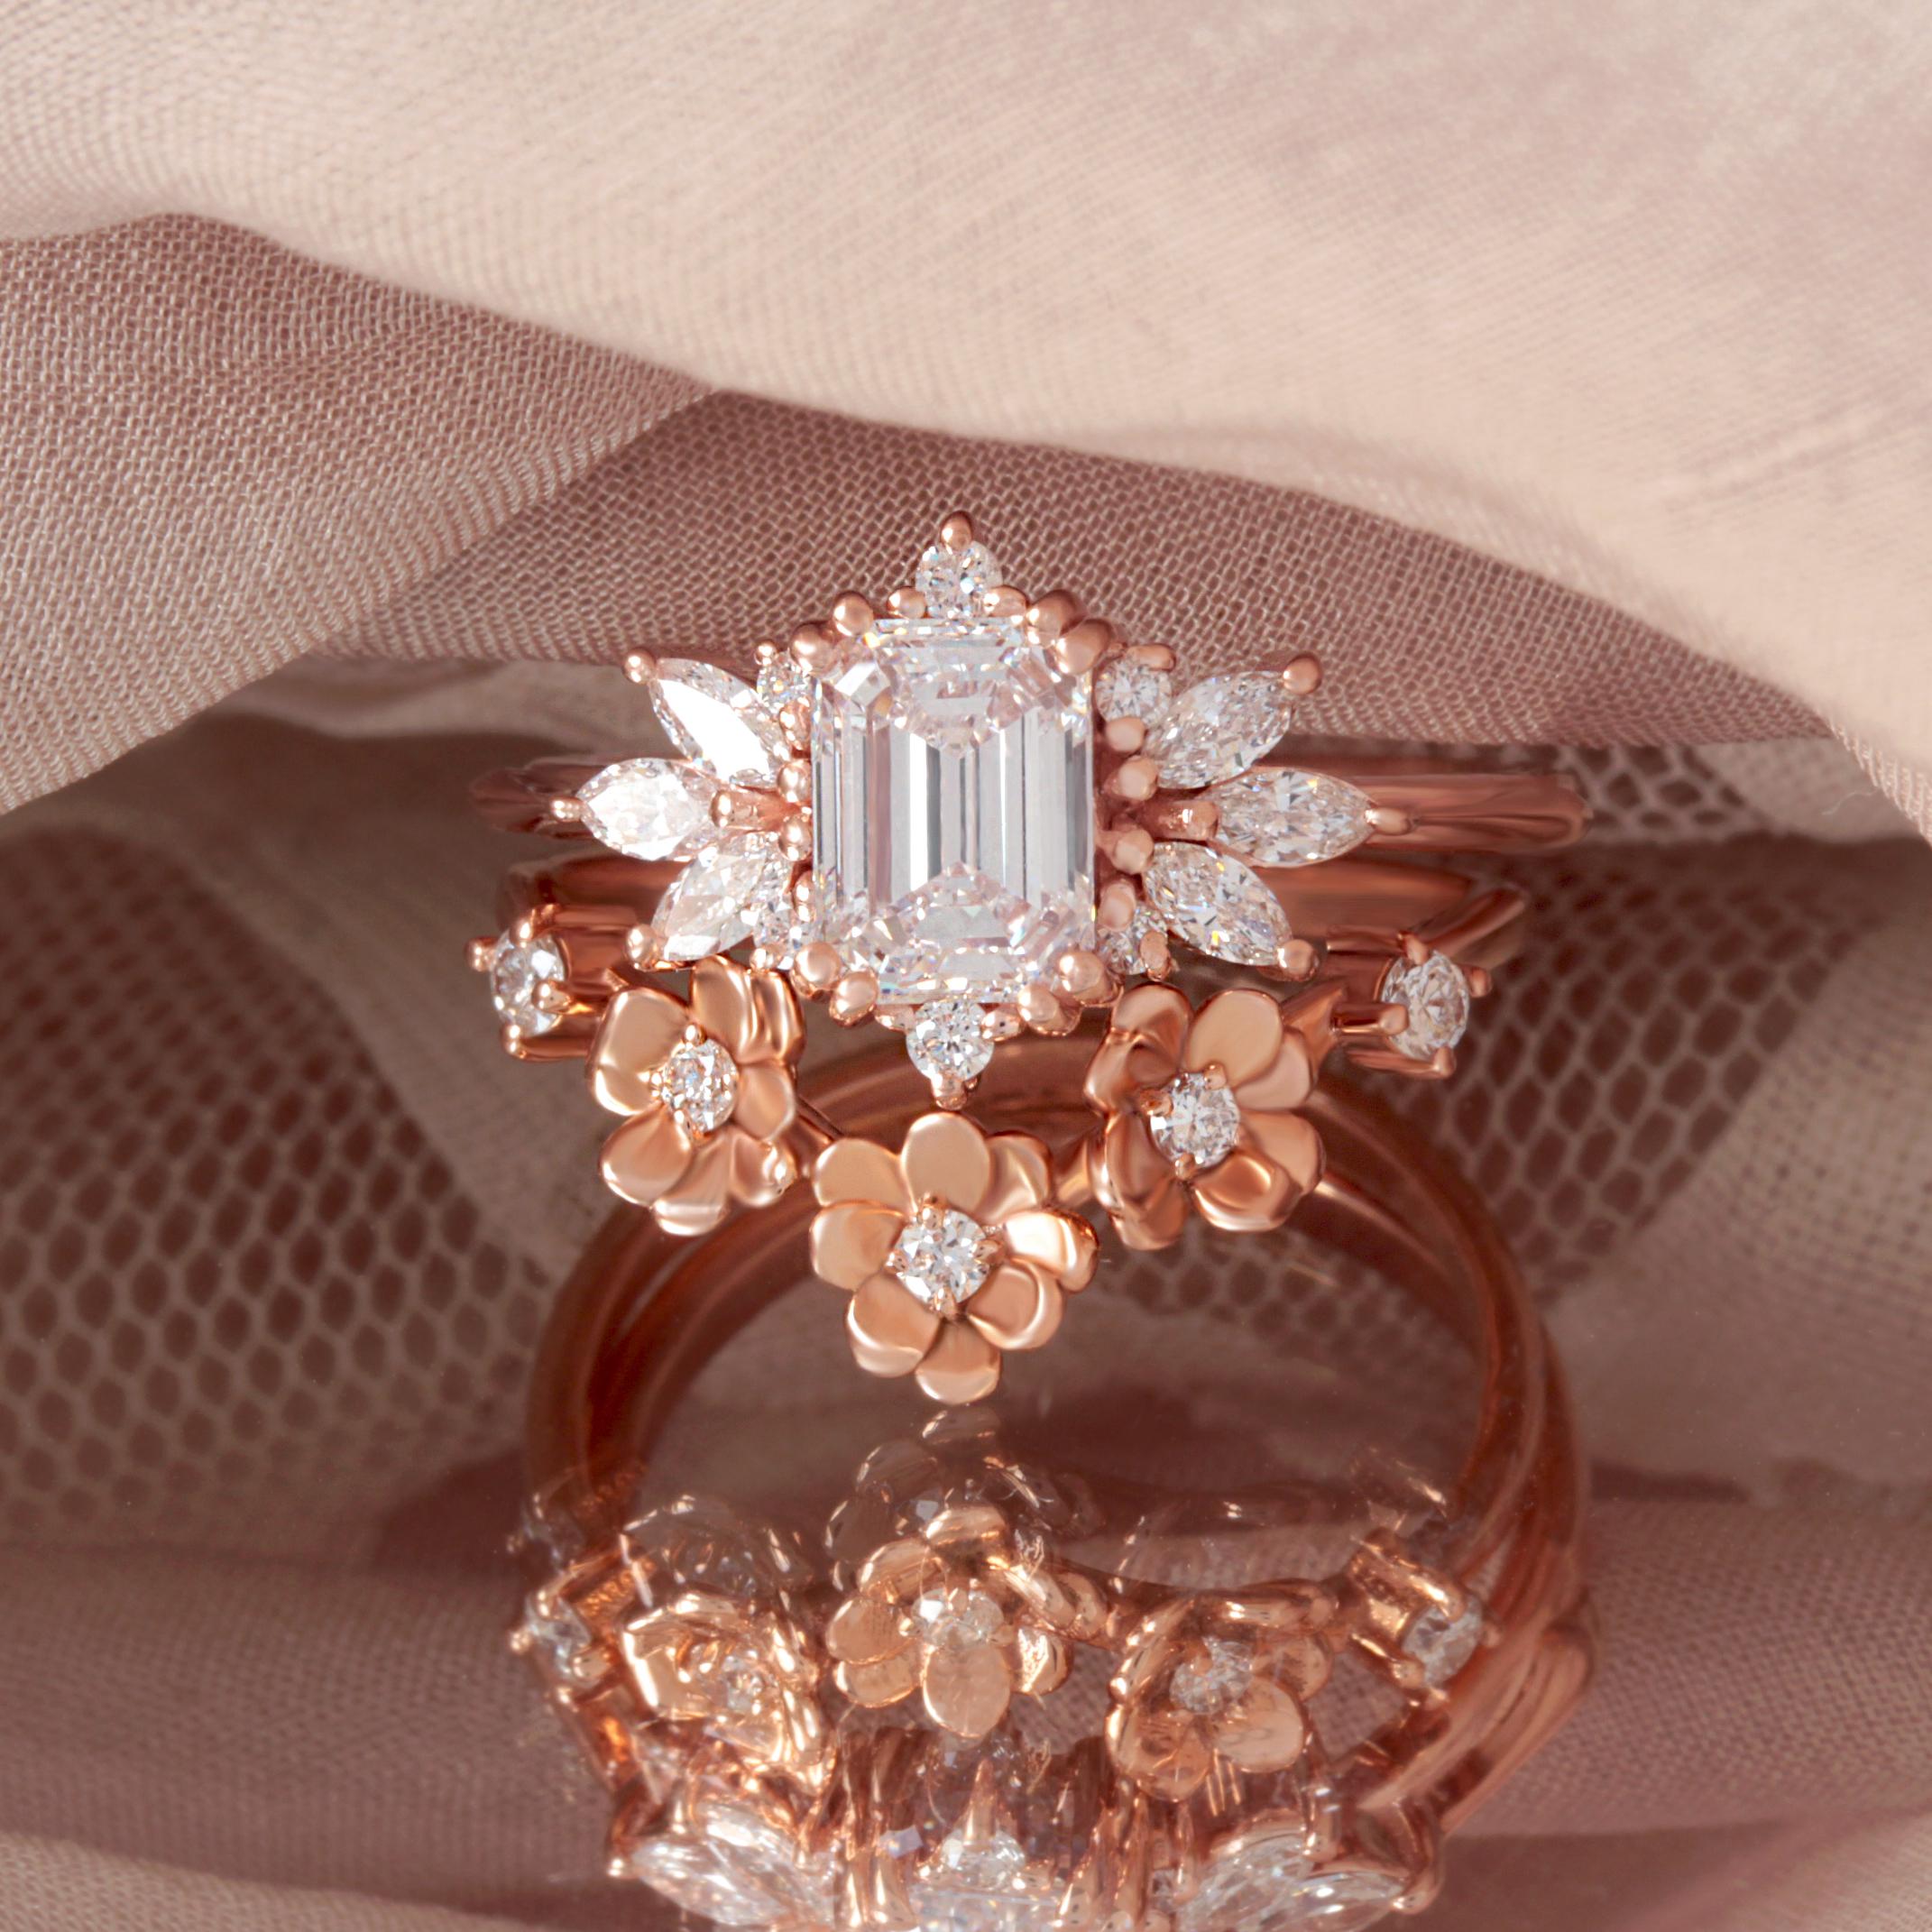 Emerald Cut Moissanite Unique and Elegant Engagement Ring 